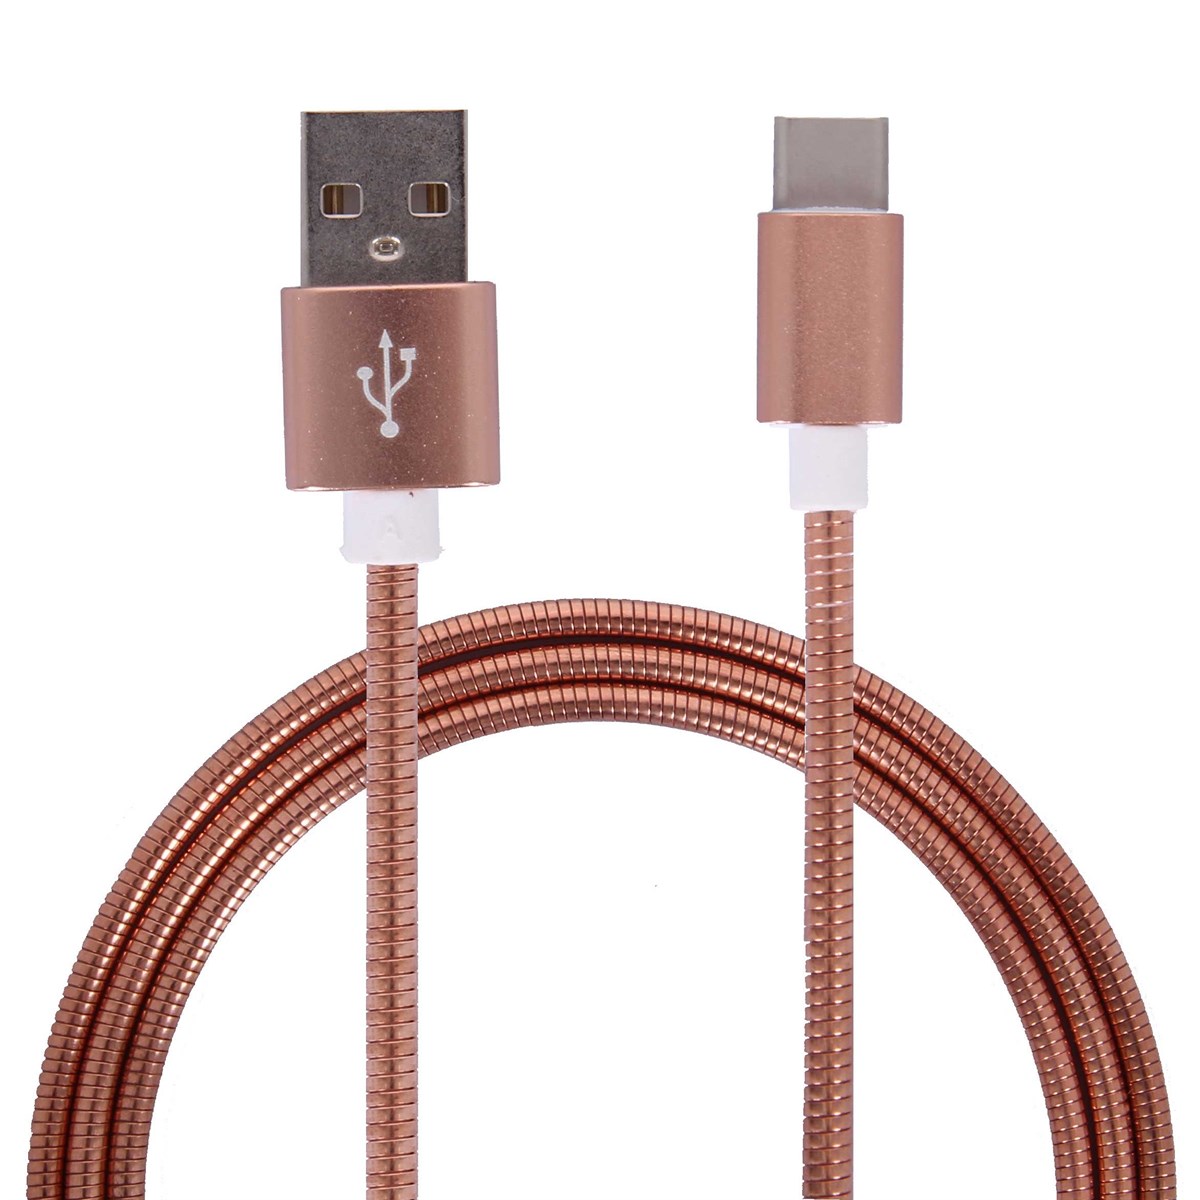 Metal kabel USB C 3.1 til USB Type A 2.0 / 1m - Rosa guld